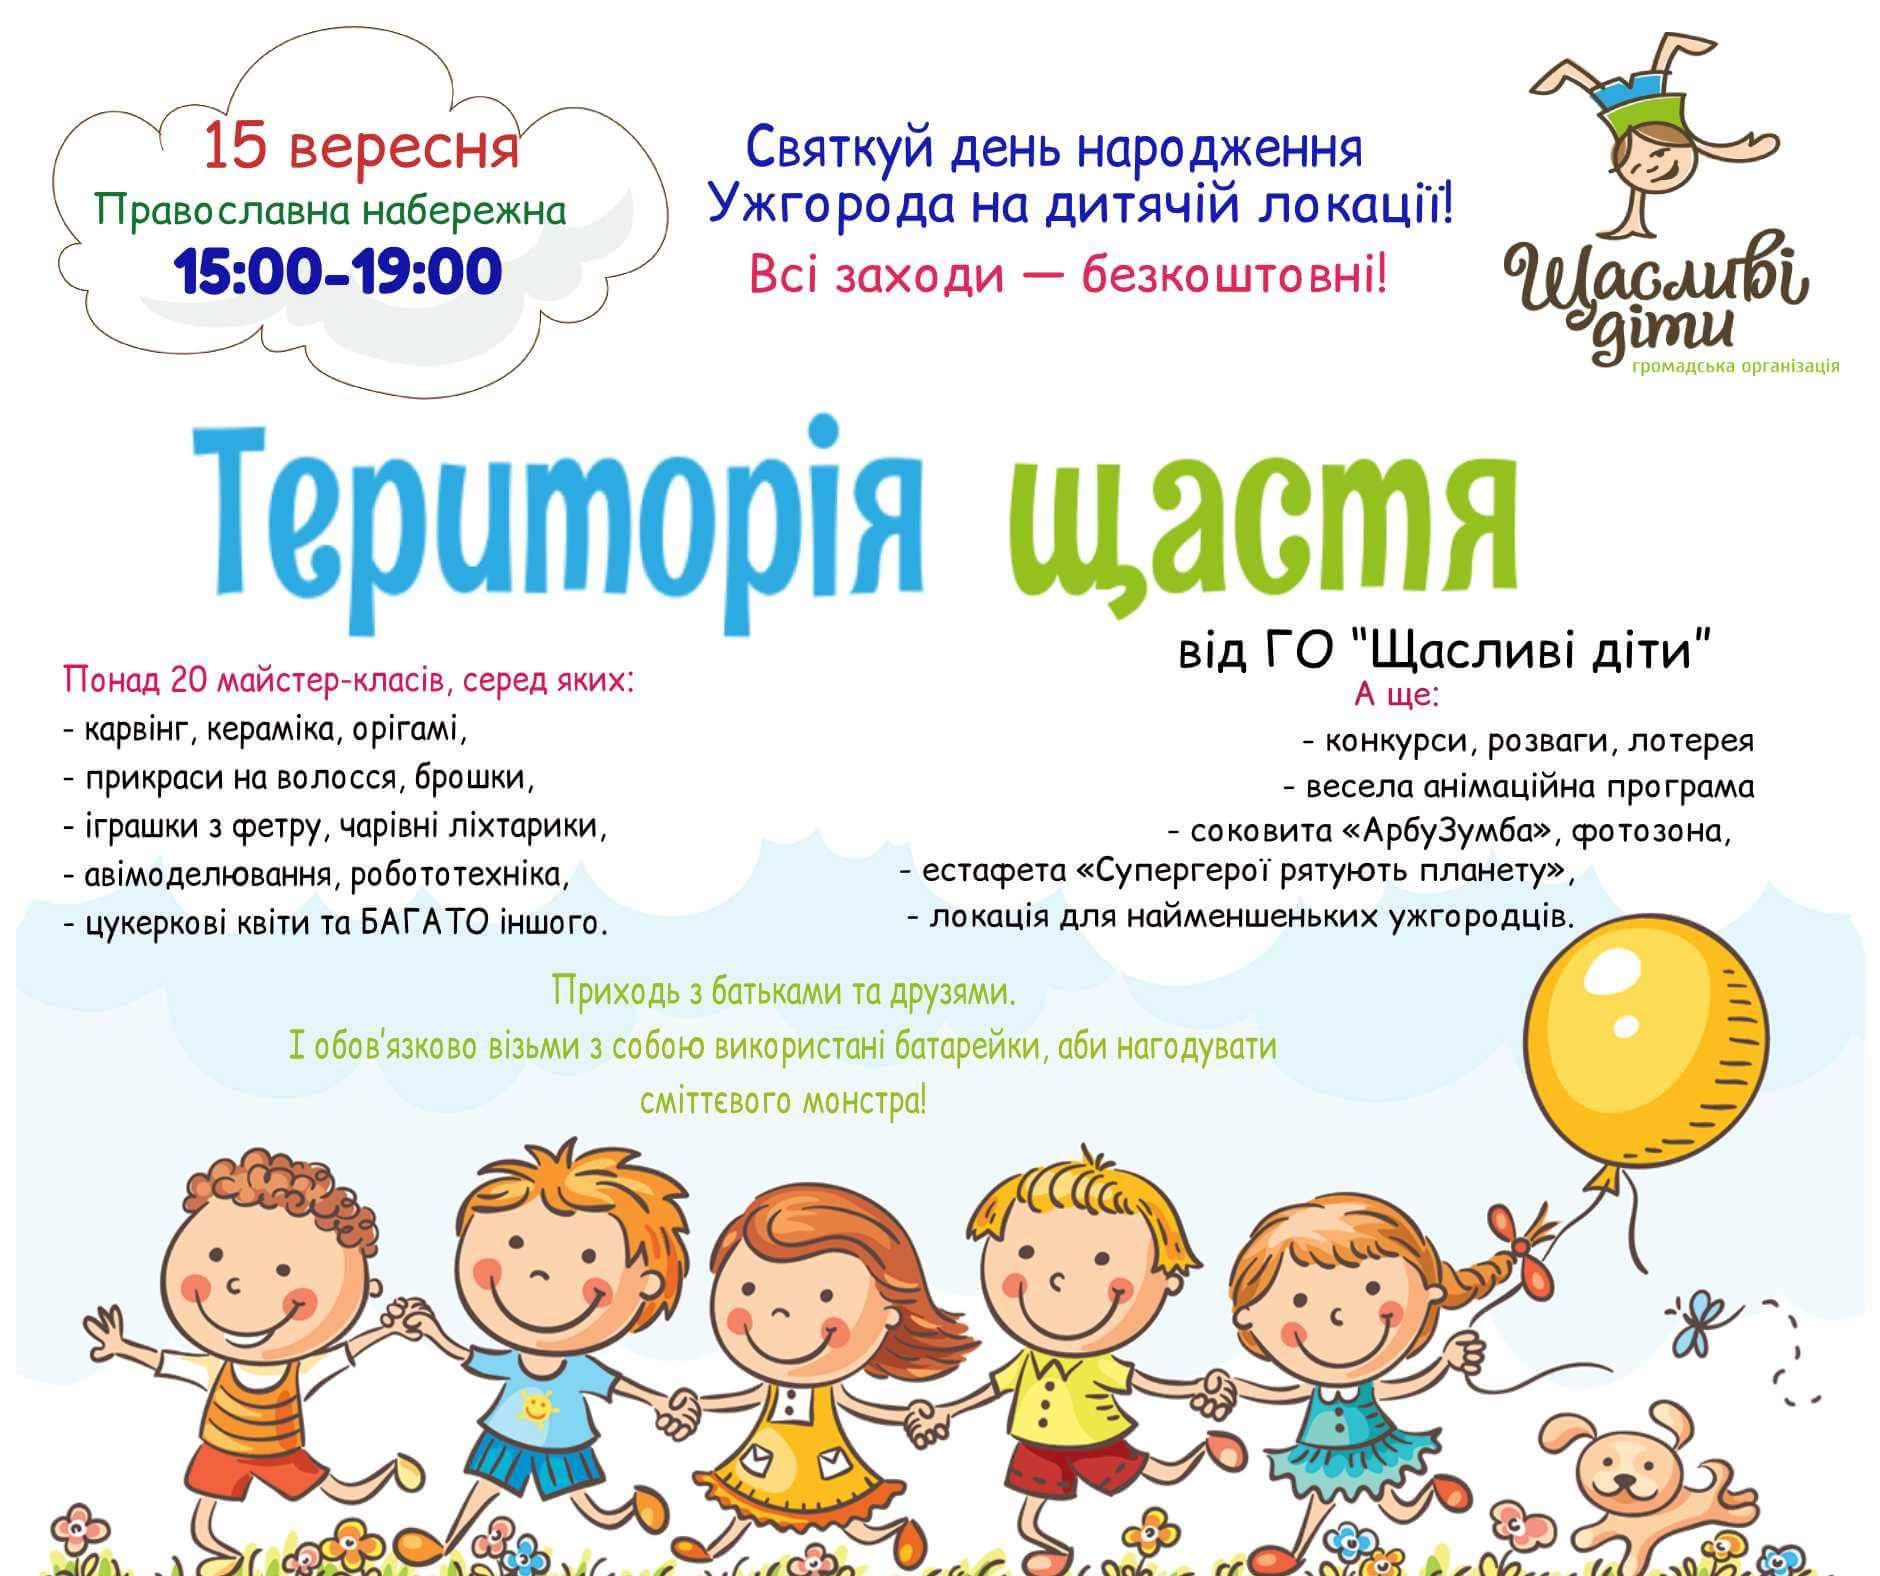 "Щасливі діти" запрошують святкувати день народження Ужгорода на дитячій локації